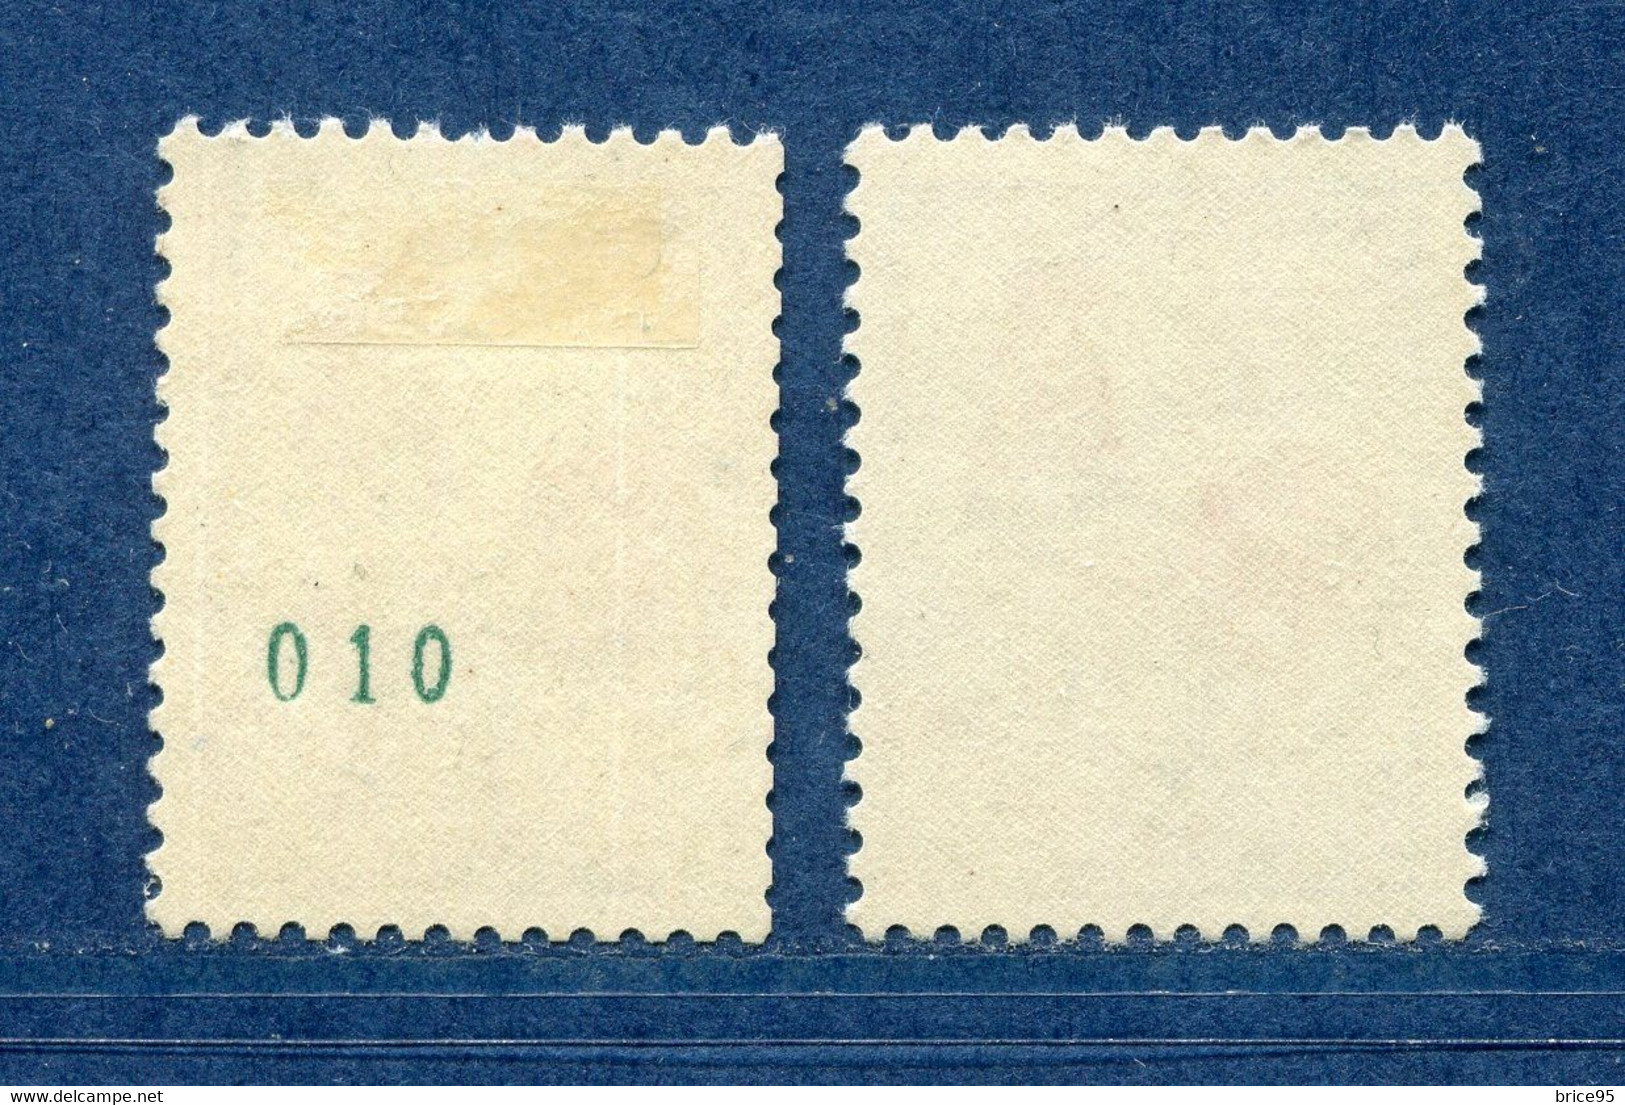 France - Variété - YT N° 1331 C * - Numéro Vert - Couleurs - Pétouilles - Neuf Avec Charnière - 1962 - Unused Stamps